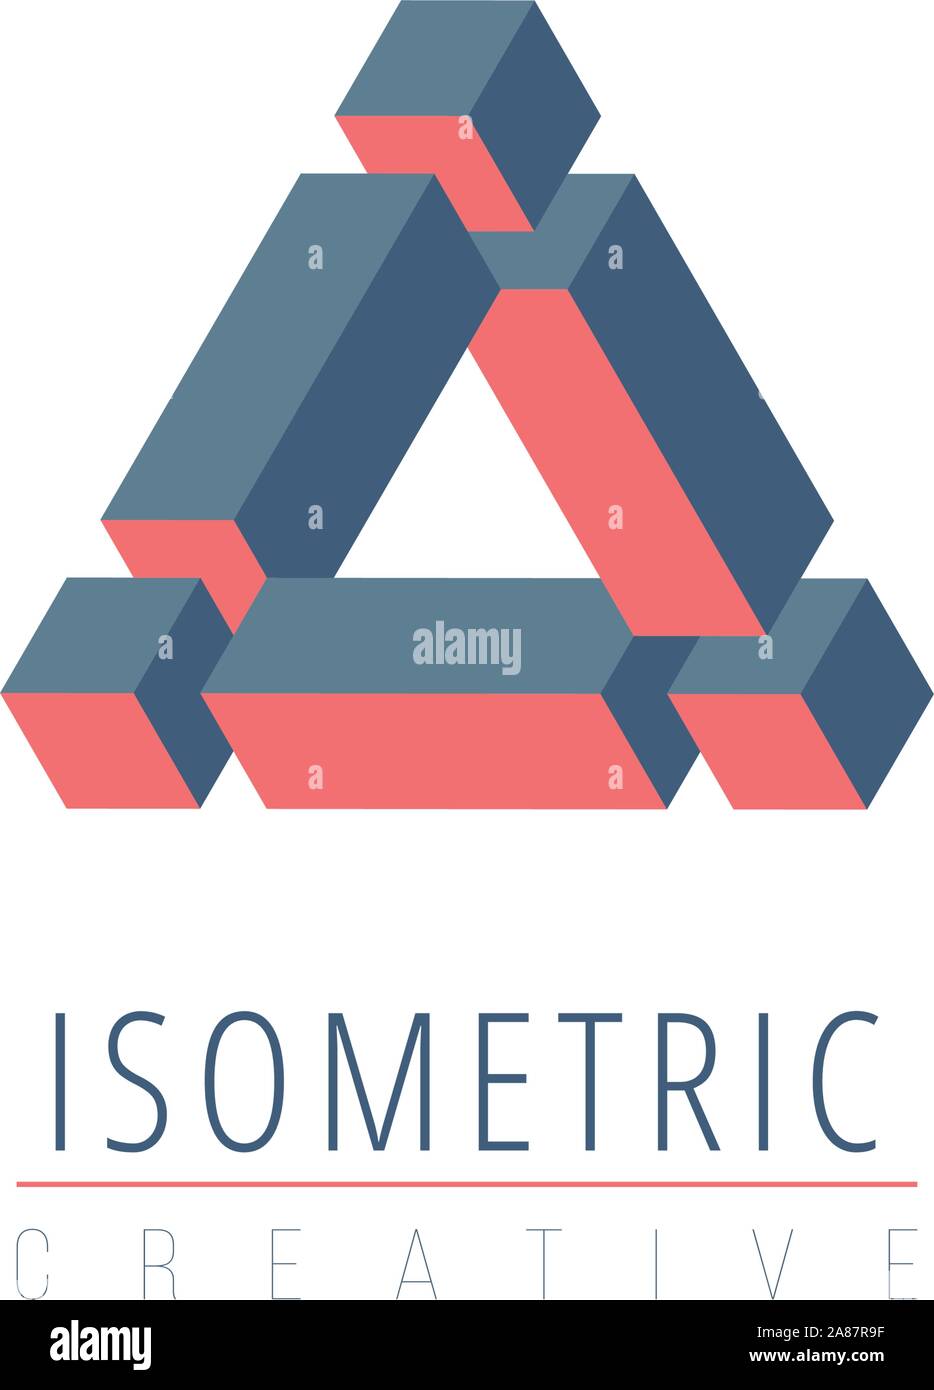 Abstrakte isometrische unmöglich cube Dreieck Logo Design vorlage, Retro optische Wirkung. Vektor Illustration auf weißem Hintergrund. Stock Vektor